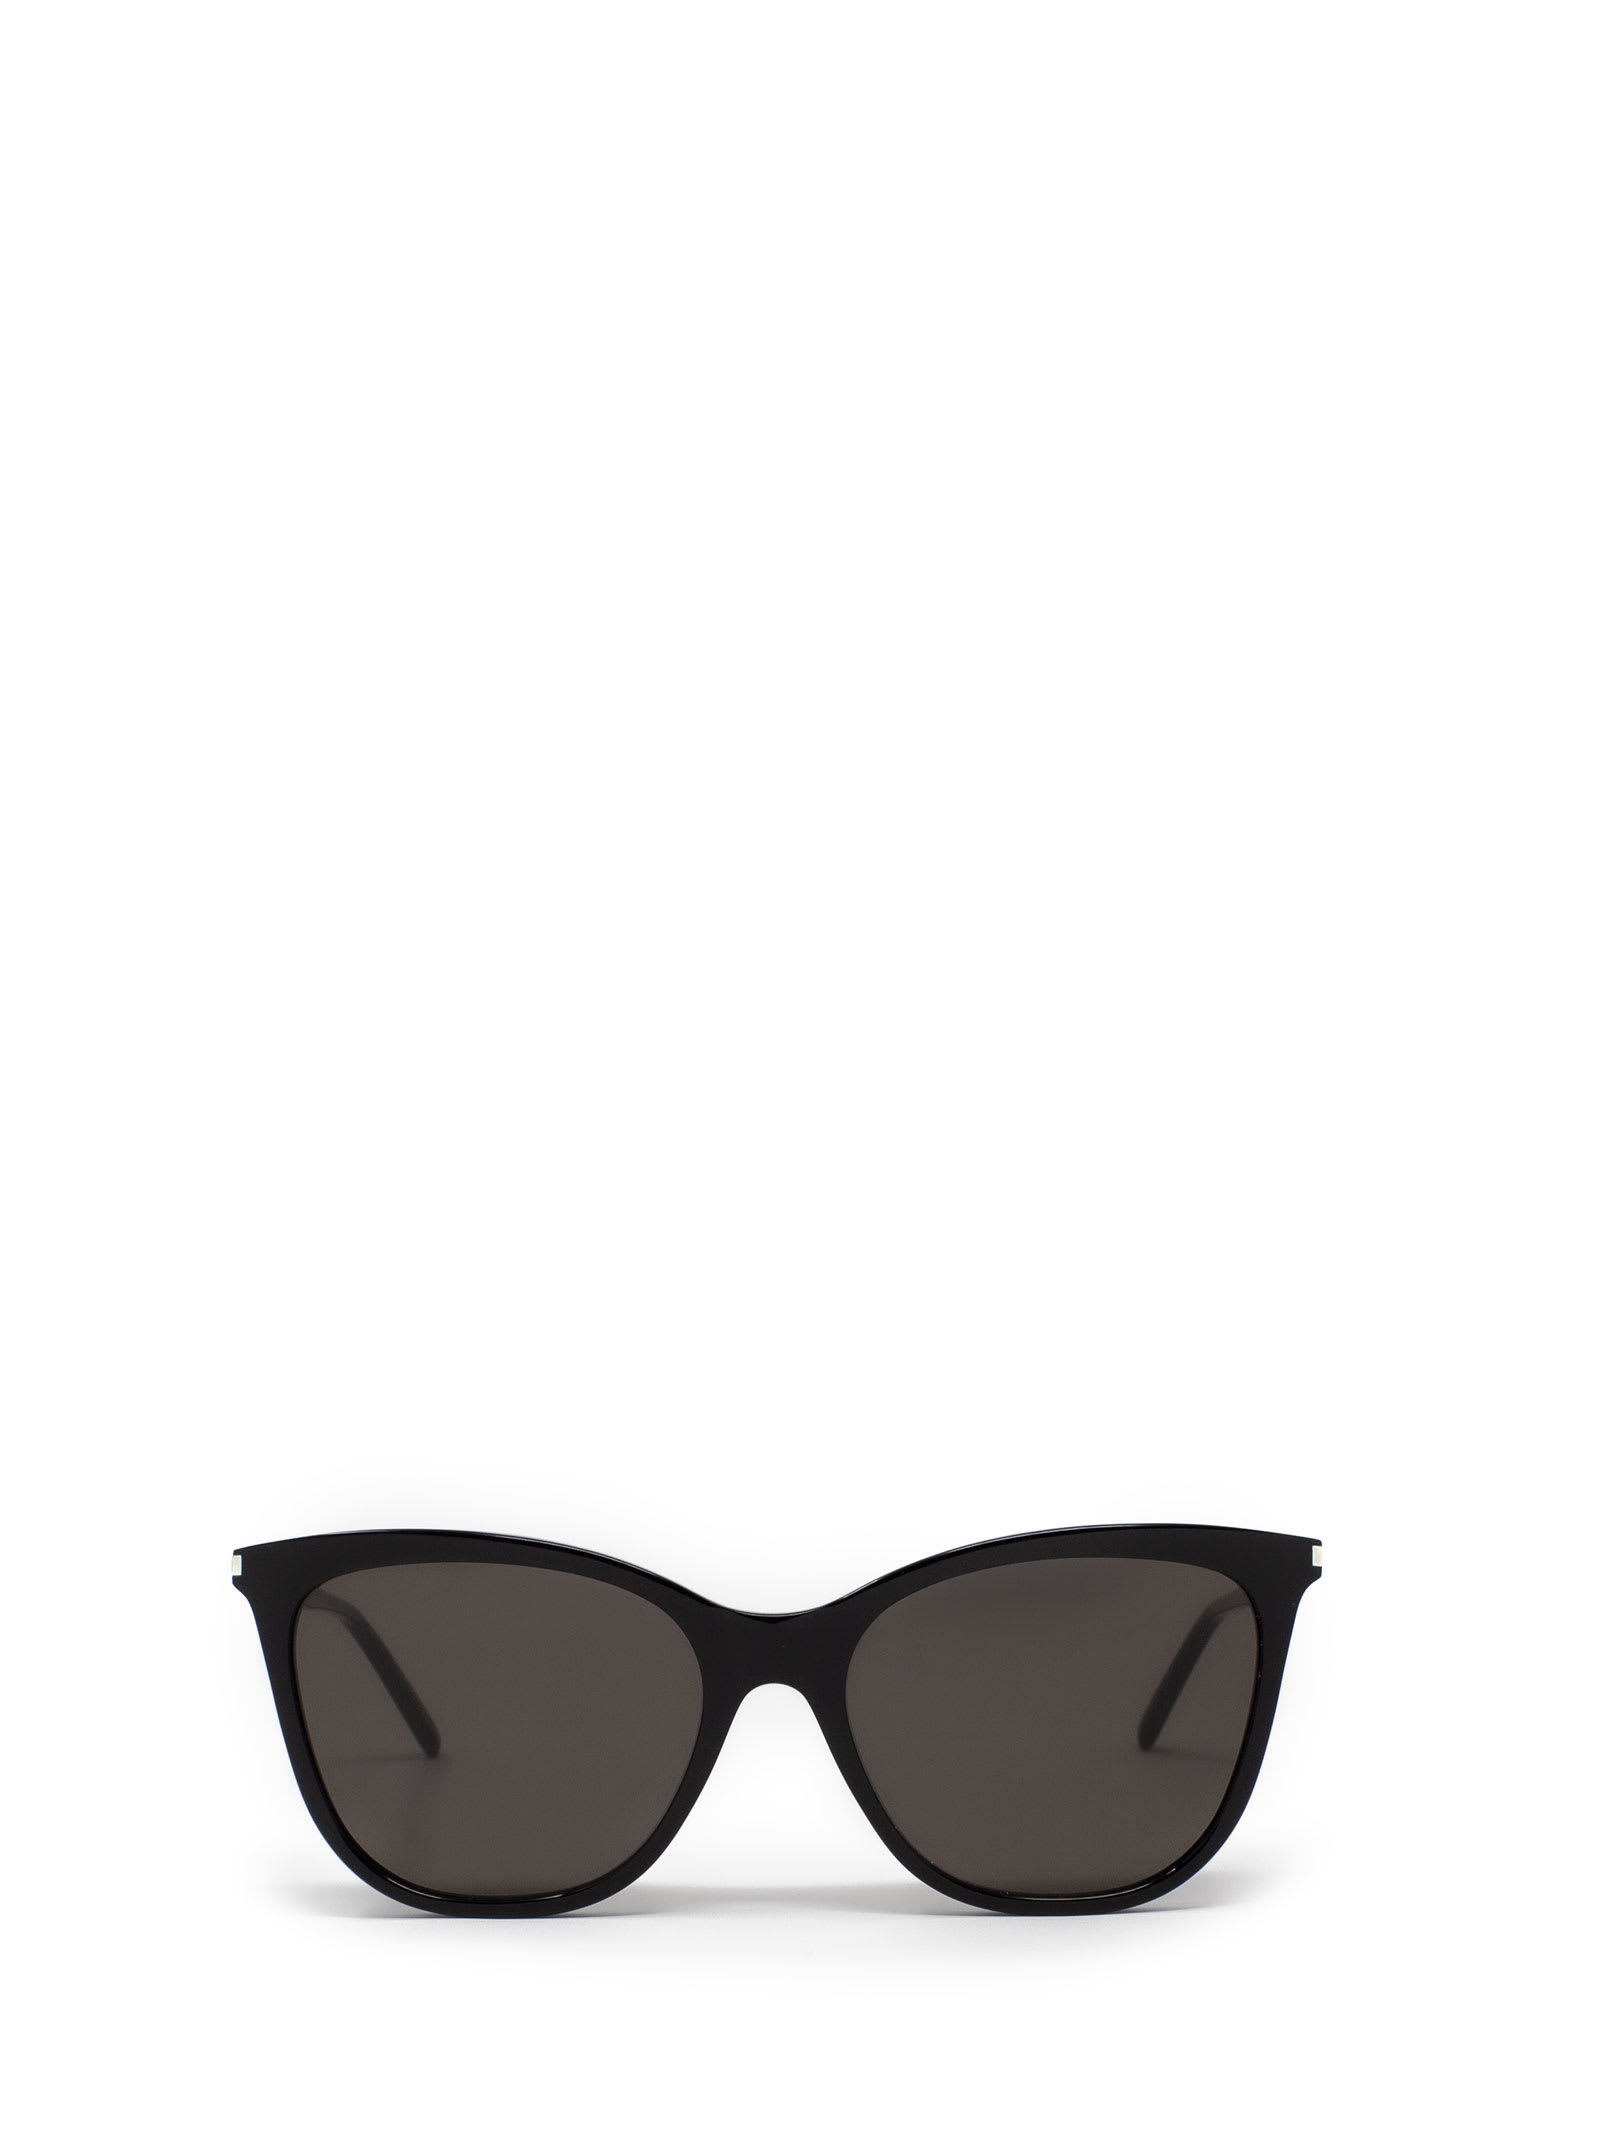 Saint Laurent Eyewear Saint Laurent Sl 305 Black Sunglasses